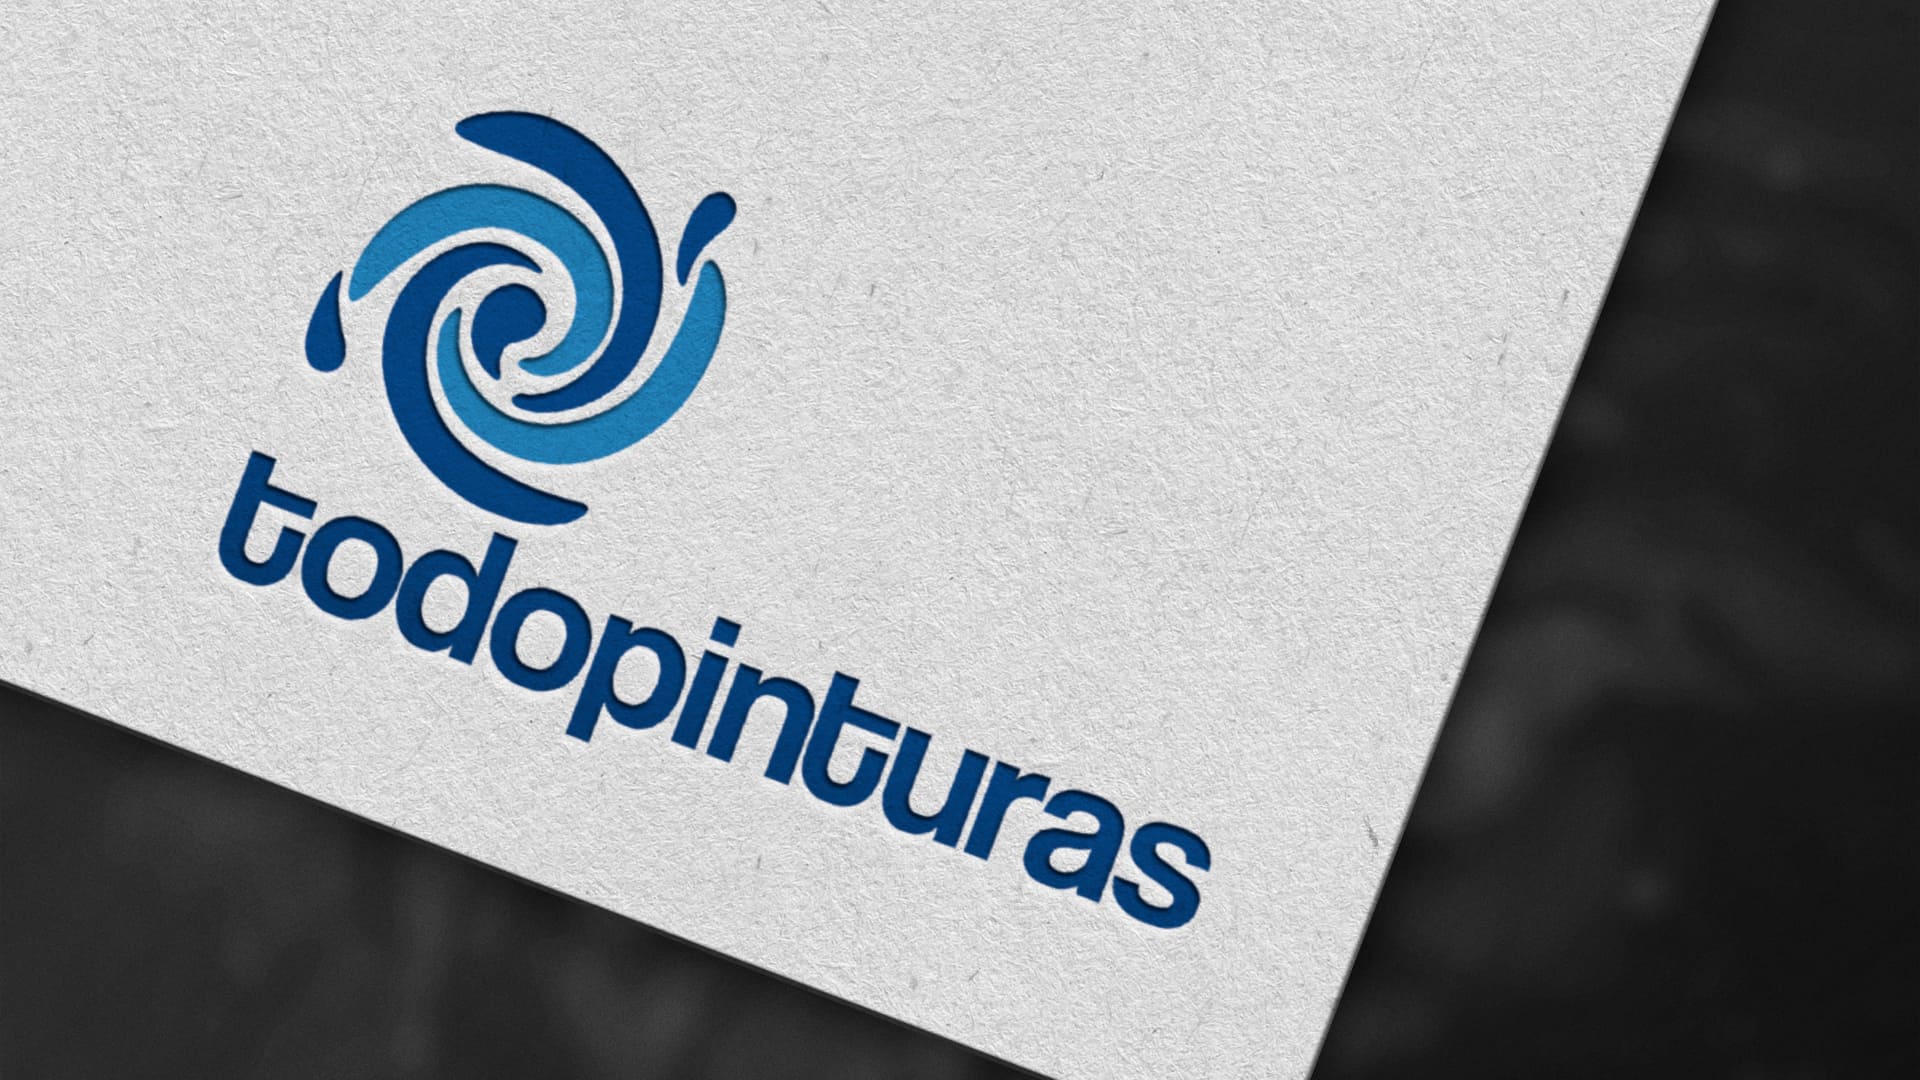 Logotipo de Todopinturas impreso en papel